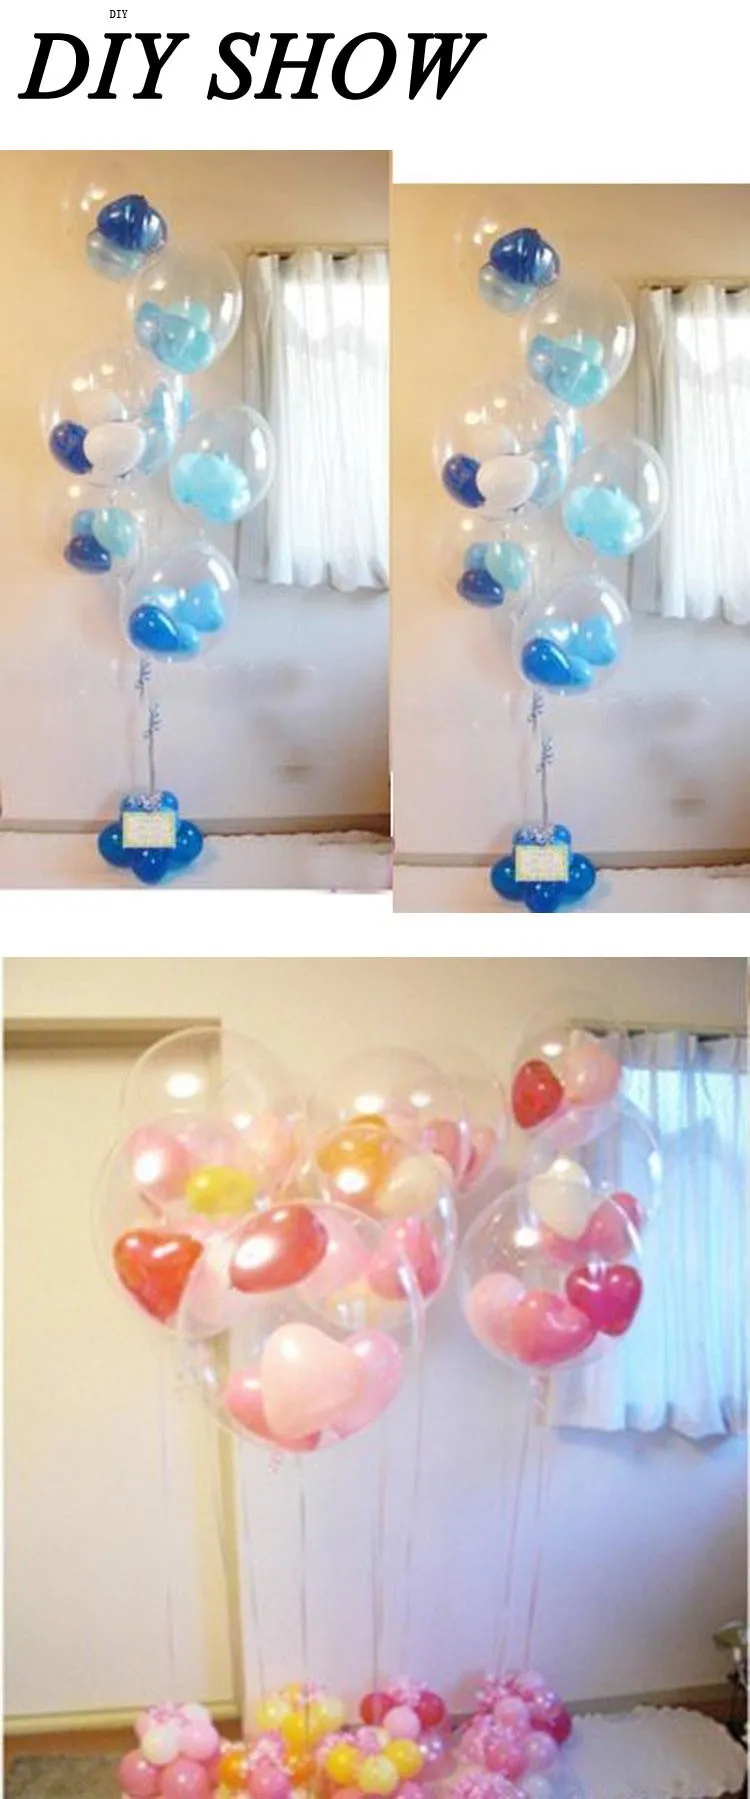 HAOCHU 100 шт/партия 12 дюймов прозрачный шар прозрачные баллоны латексный Гелиевый шар для Свадебная вечеринка Декор Детская Классическая Игрушка